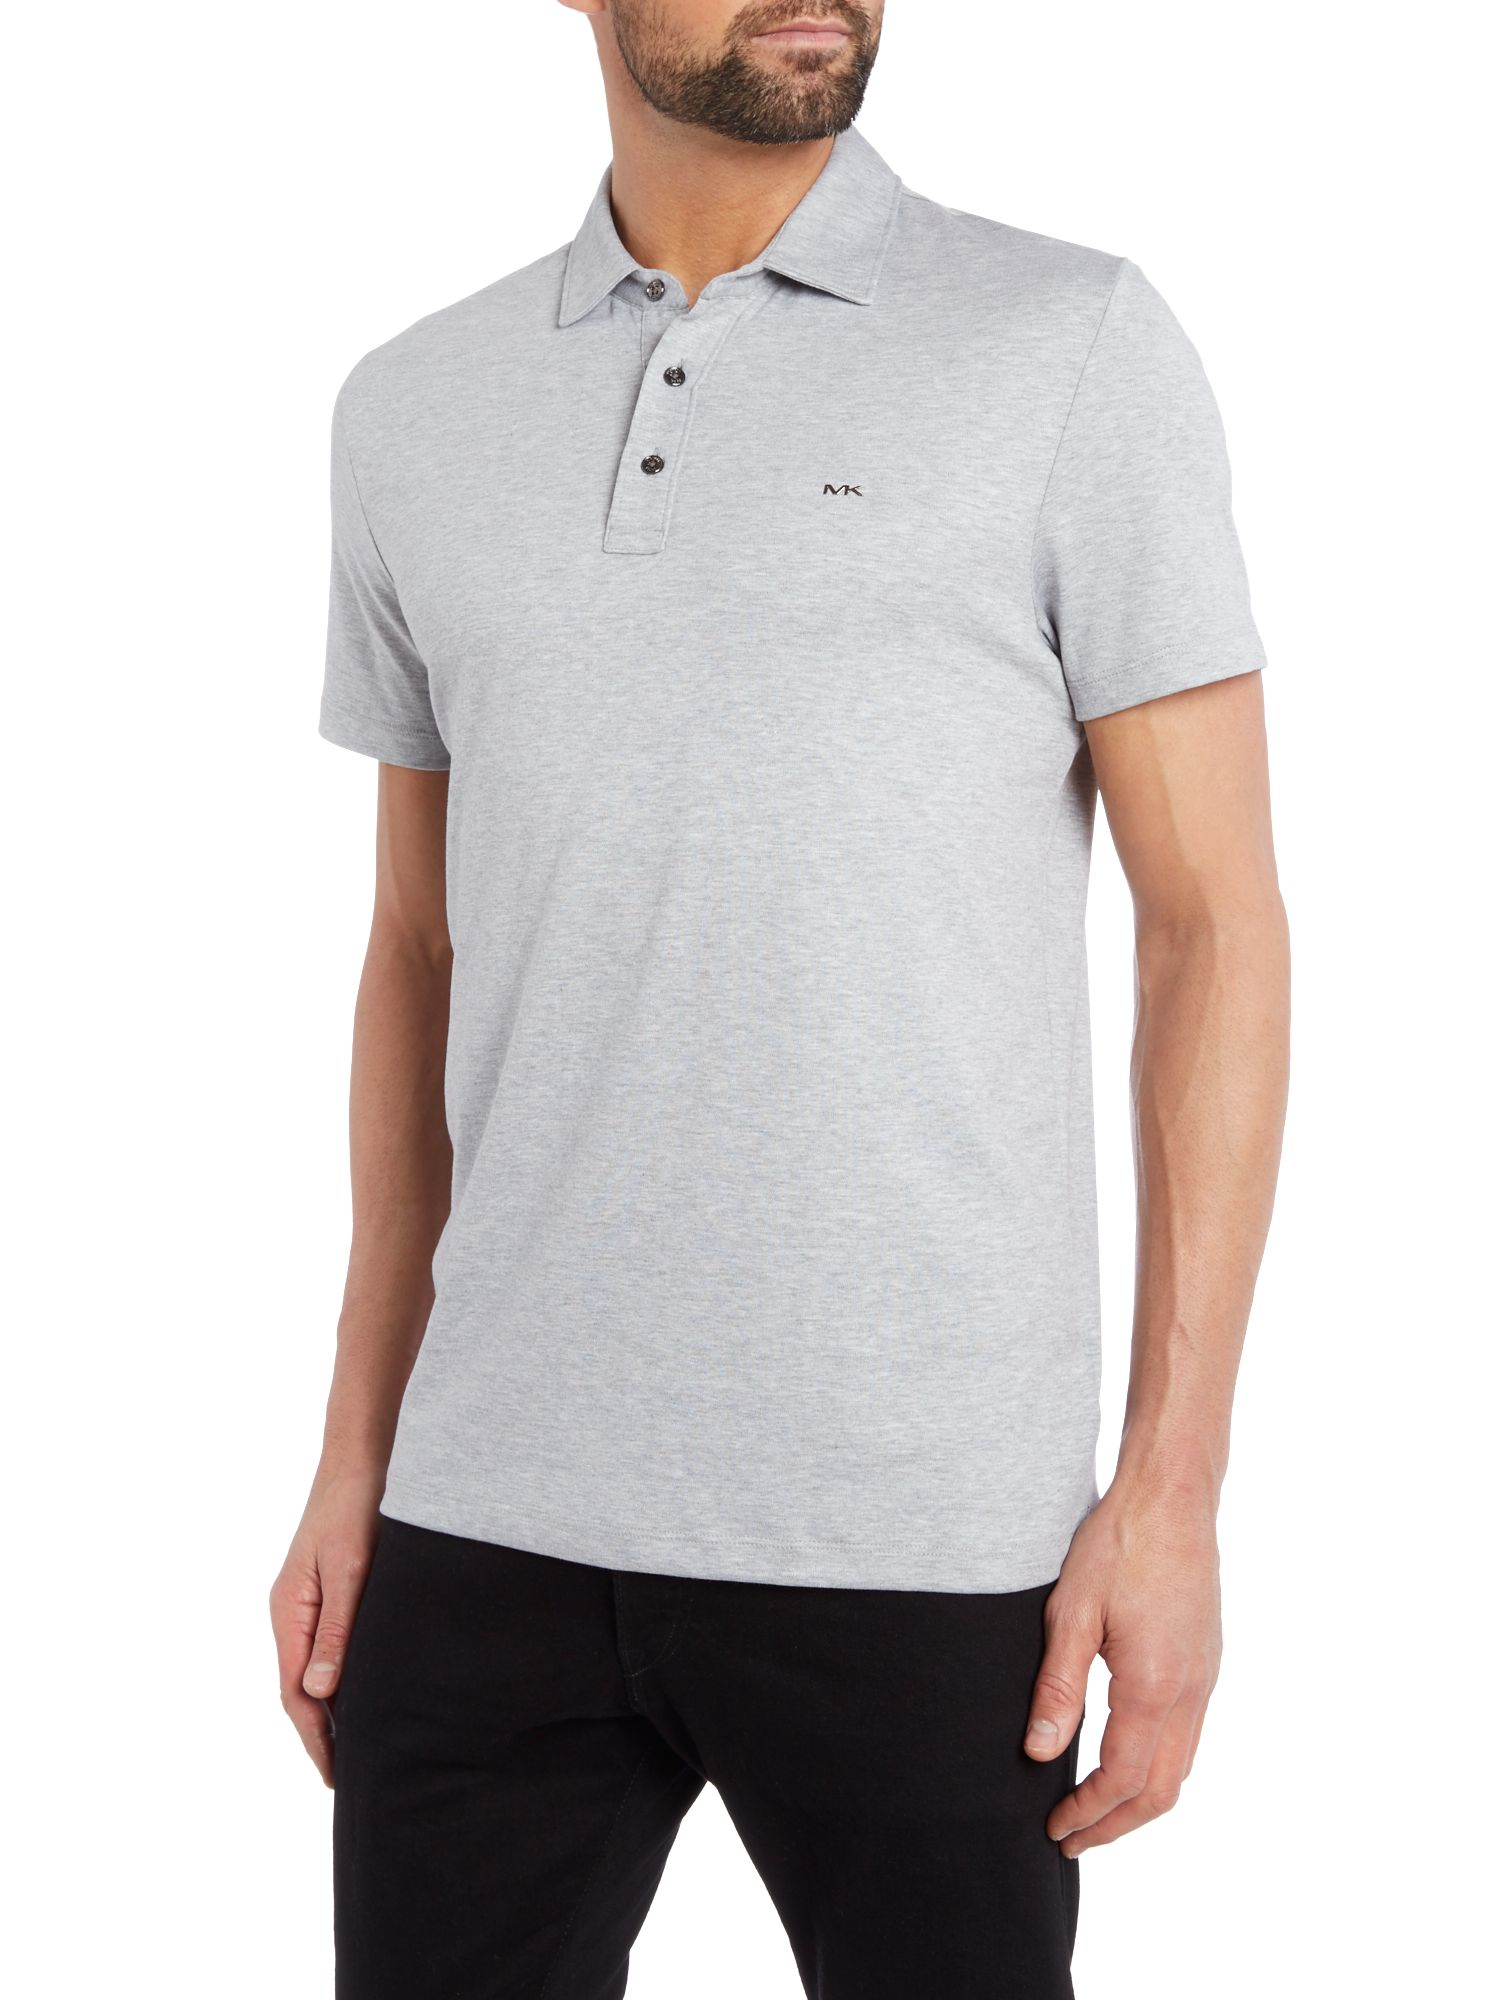 Michael kors Slim Fit Sleek Mk Logo Polo Shirt in Gray for Men (Light ...